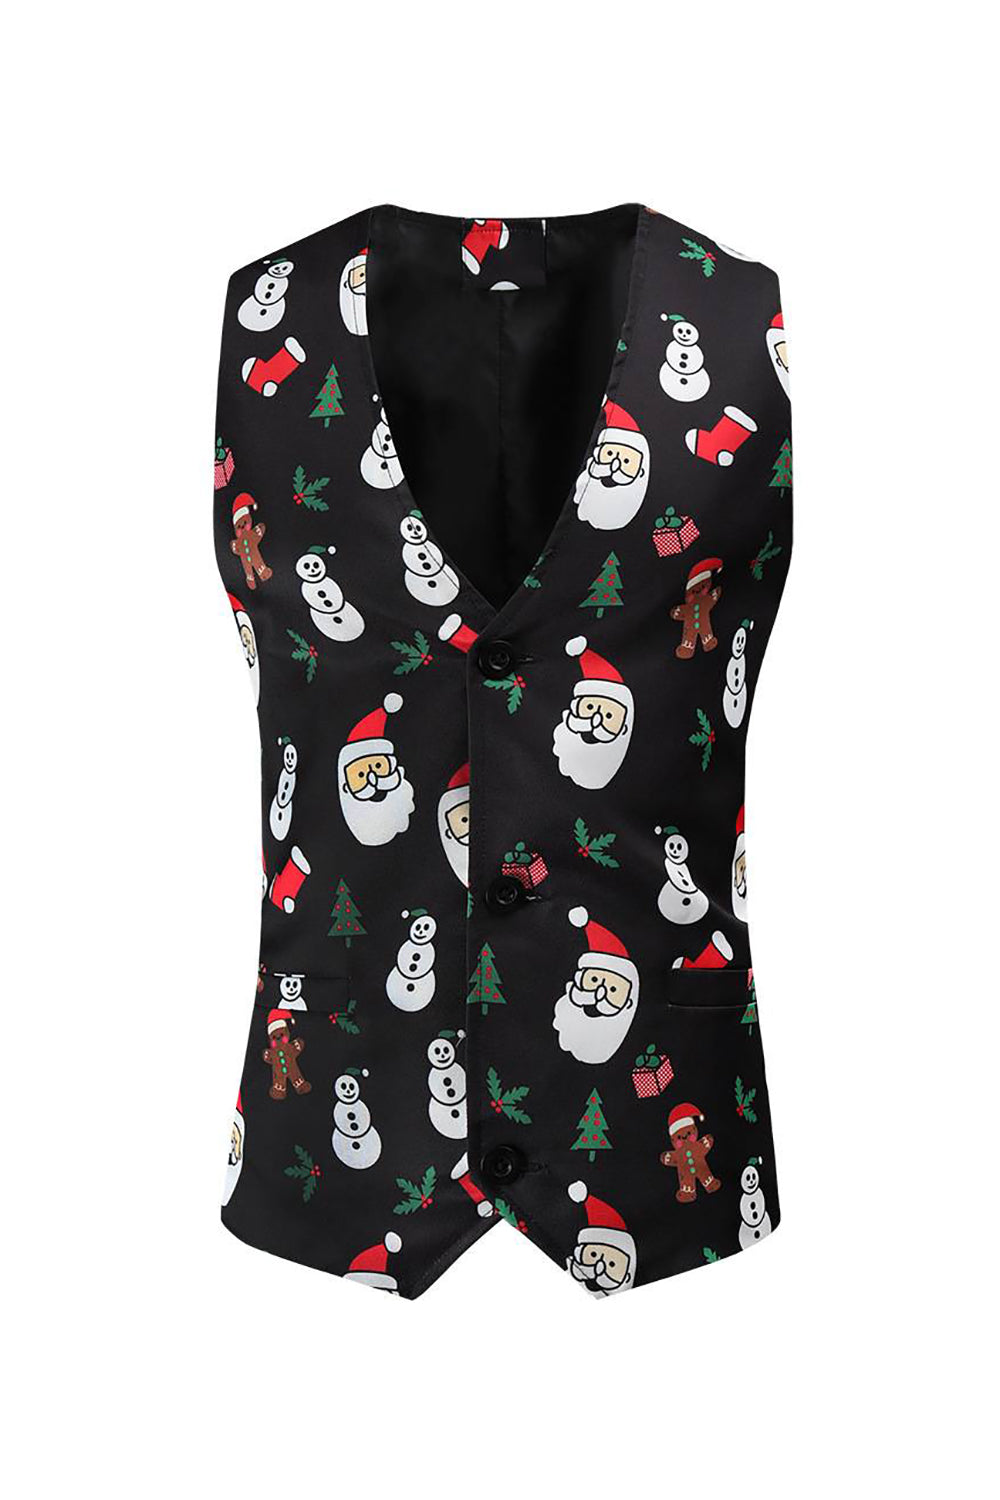 Black Santa Claus Snowman Print Men's Suit Vest